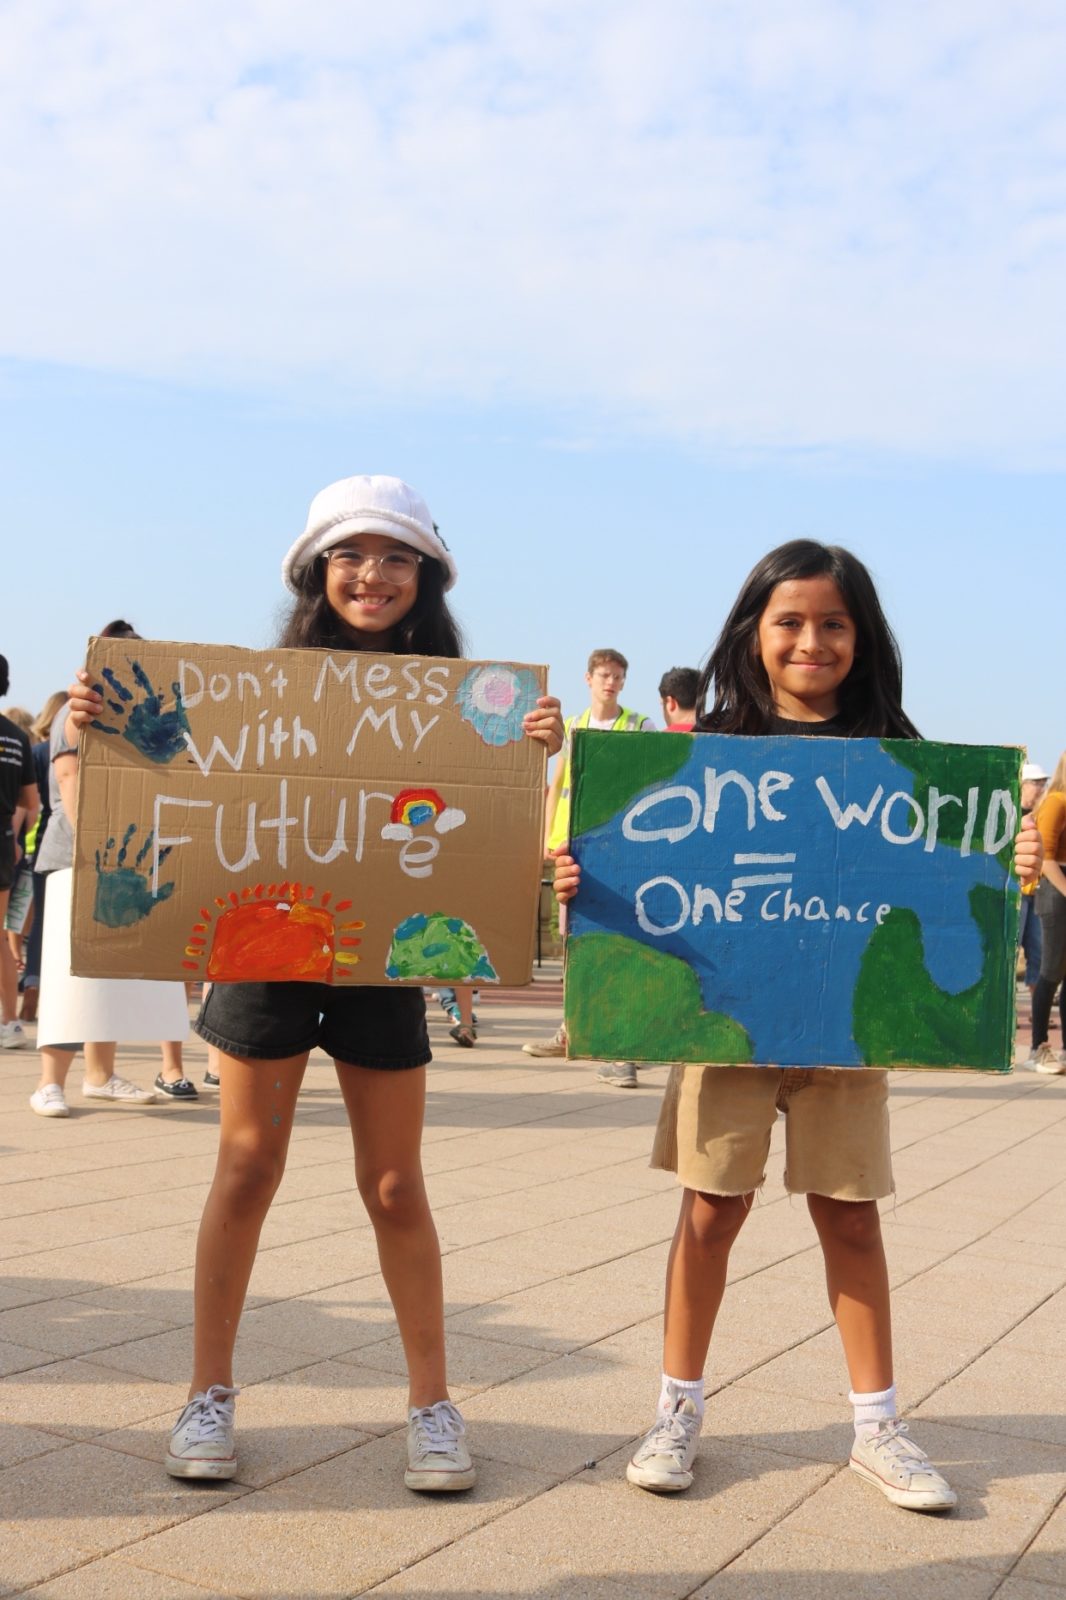 Zwei junge Aktivisten halten während des Klimastreiks im September 2019 Schilder mit der Aufschrift "Don't mess with my future" und "One world, one chance" hoch.